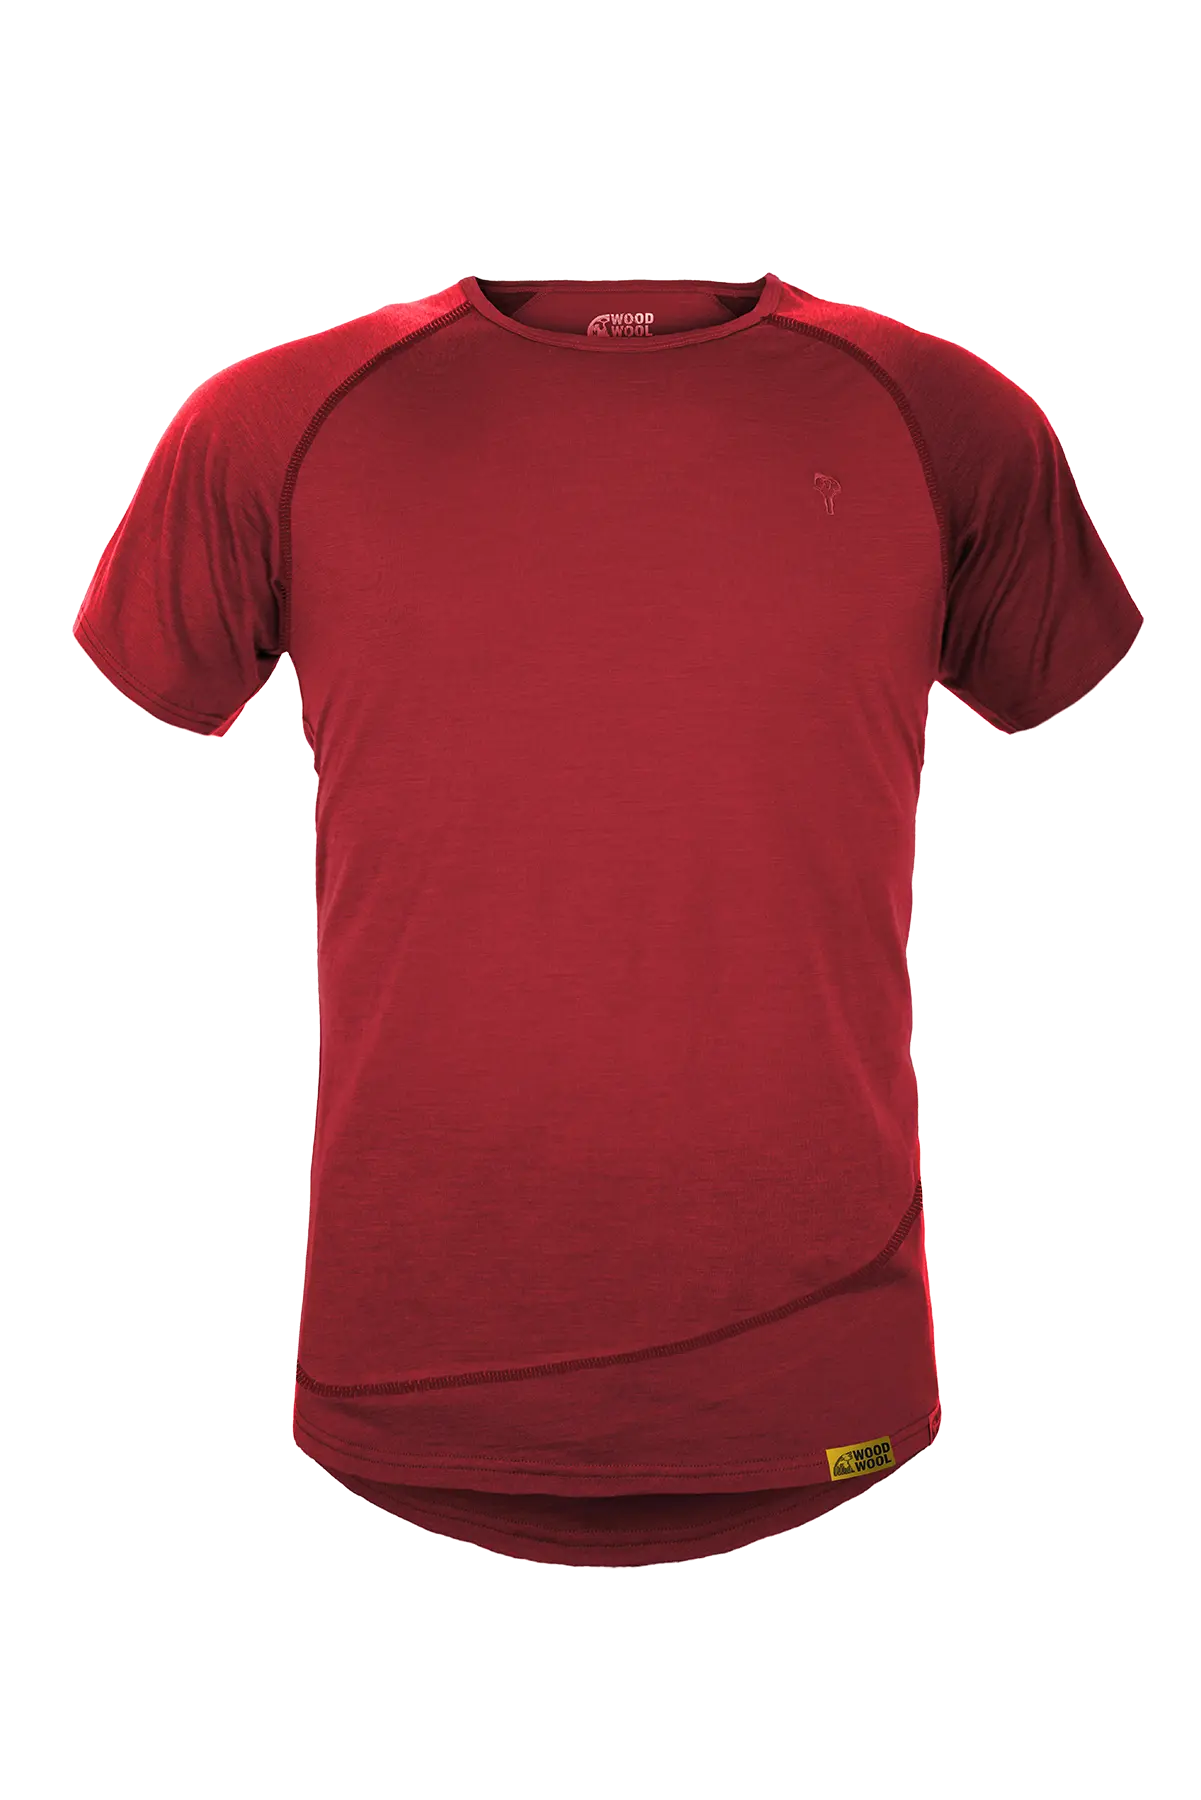 gruezi-bag-woodwool-t-shirt-mr-pike-2760-2764-2750-5002-fired-red-brick-amainfrei Kopie